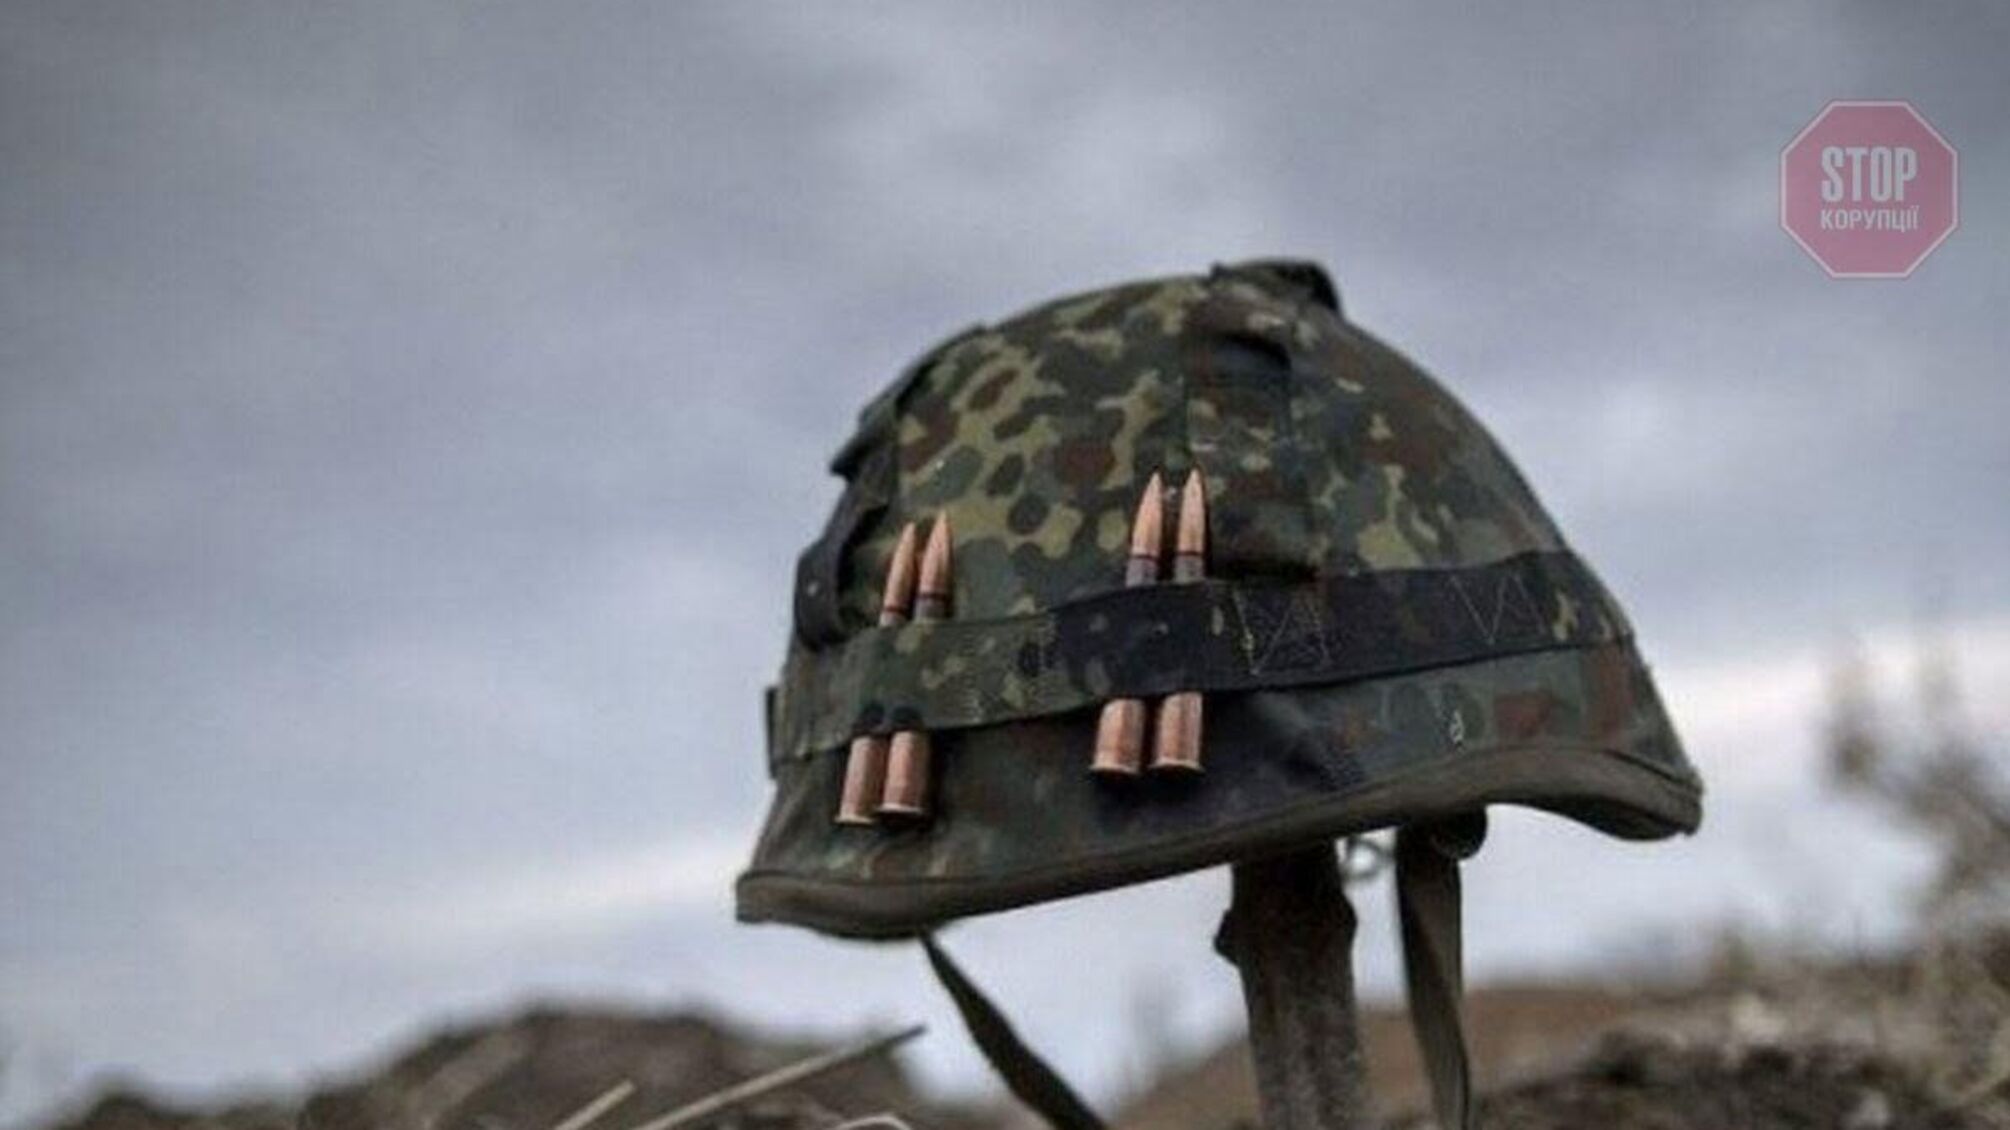 Обострение на Донбассе: боевики обстреляли украинские позиции, 7 военнослужащих получили ранения